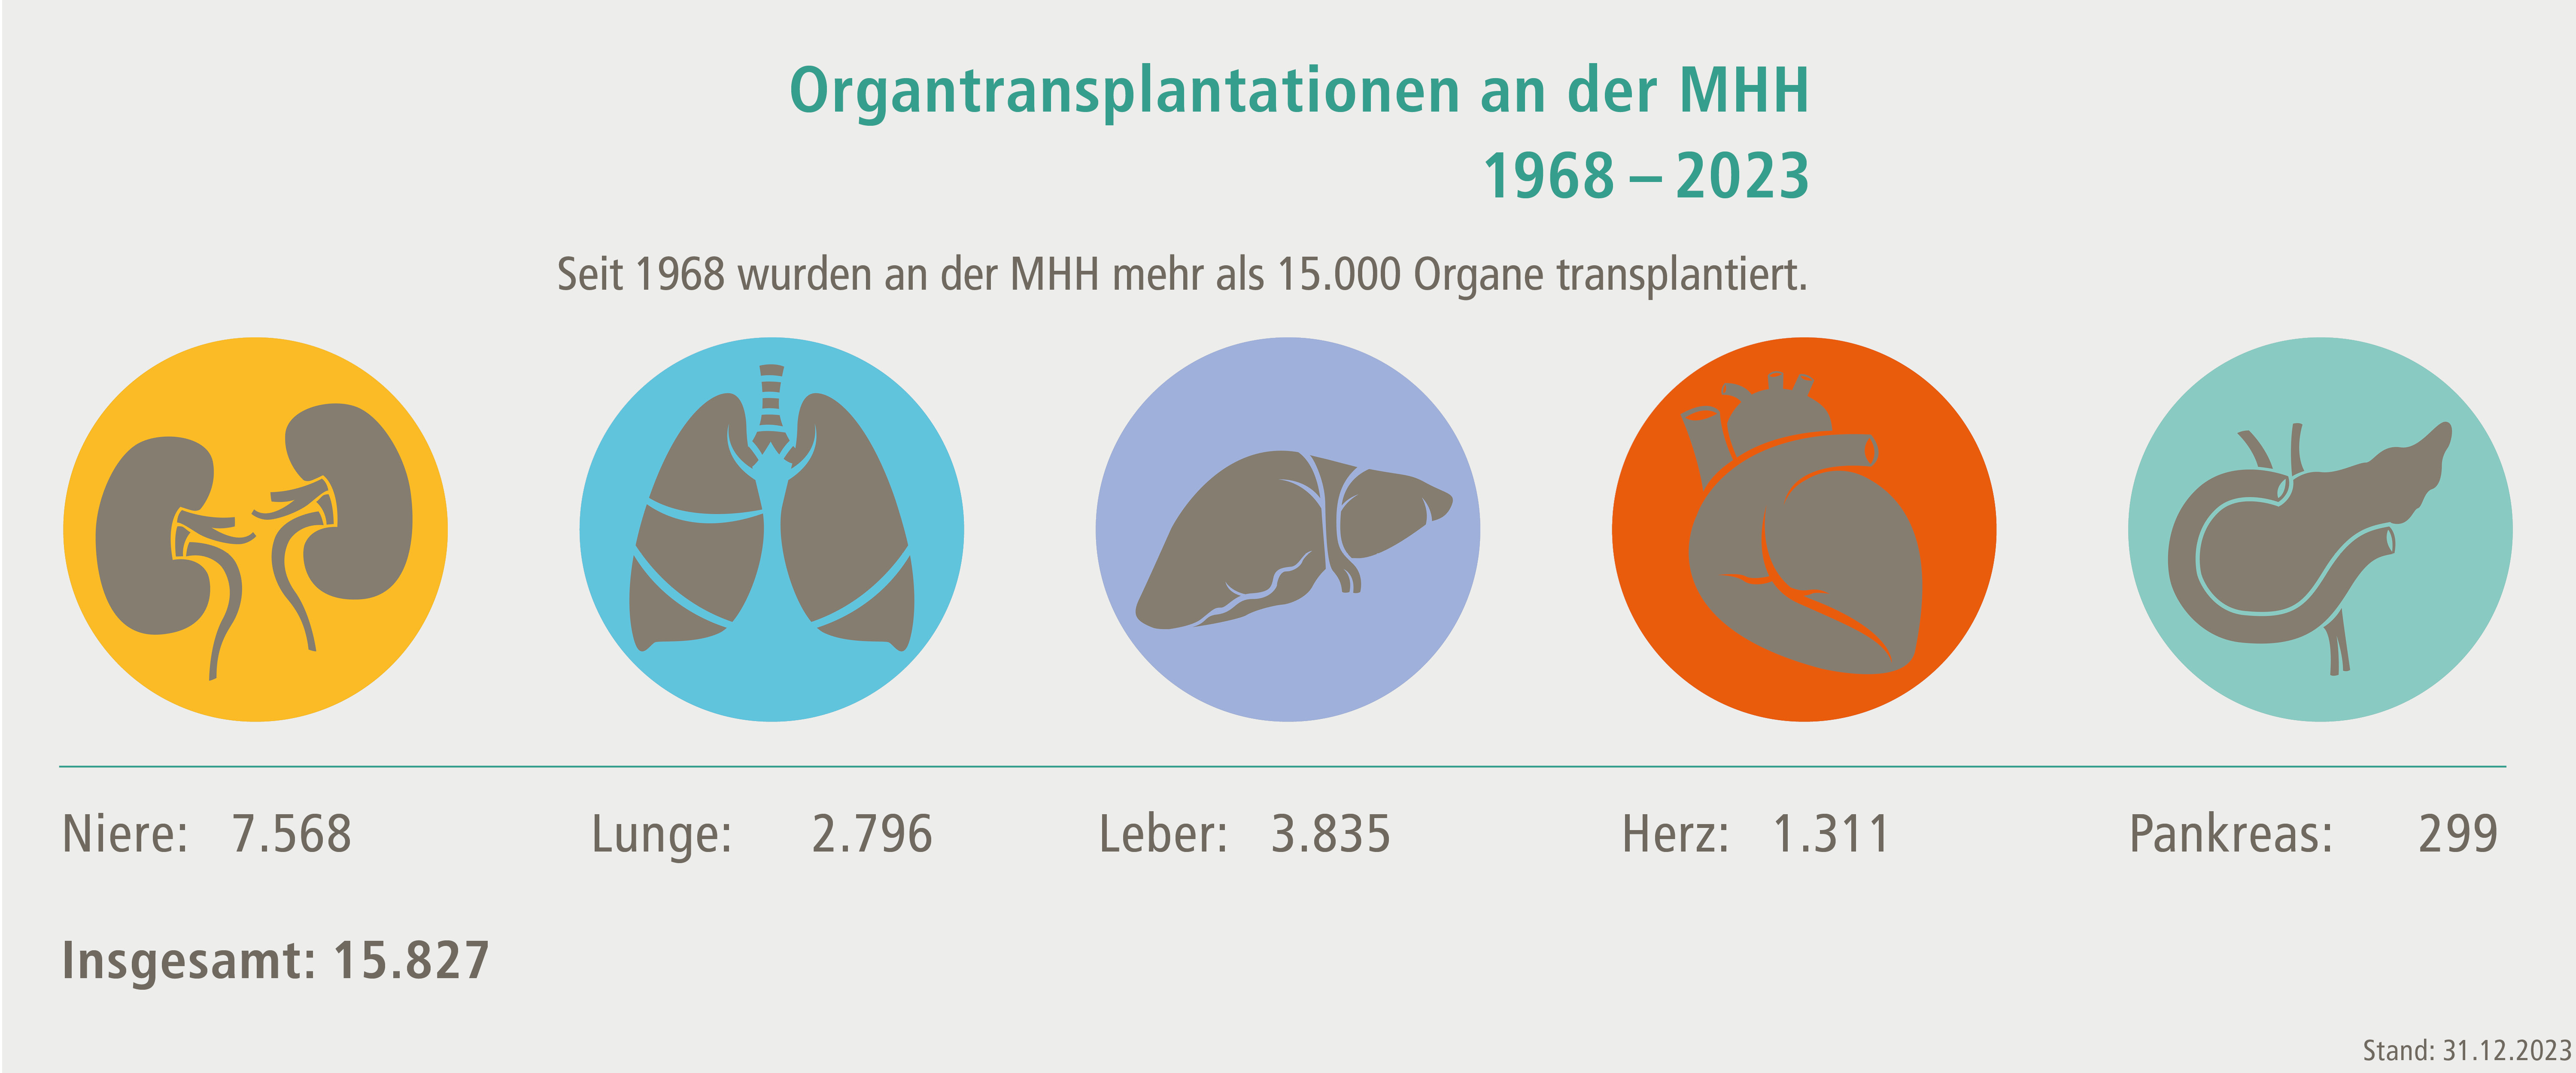 Von 1968 bis einschließlich 2023 hat die MHH insgesamt 15.827 Organtransplantationen vorgenommen. Copyright: MHH / Transplantationszentrum